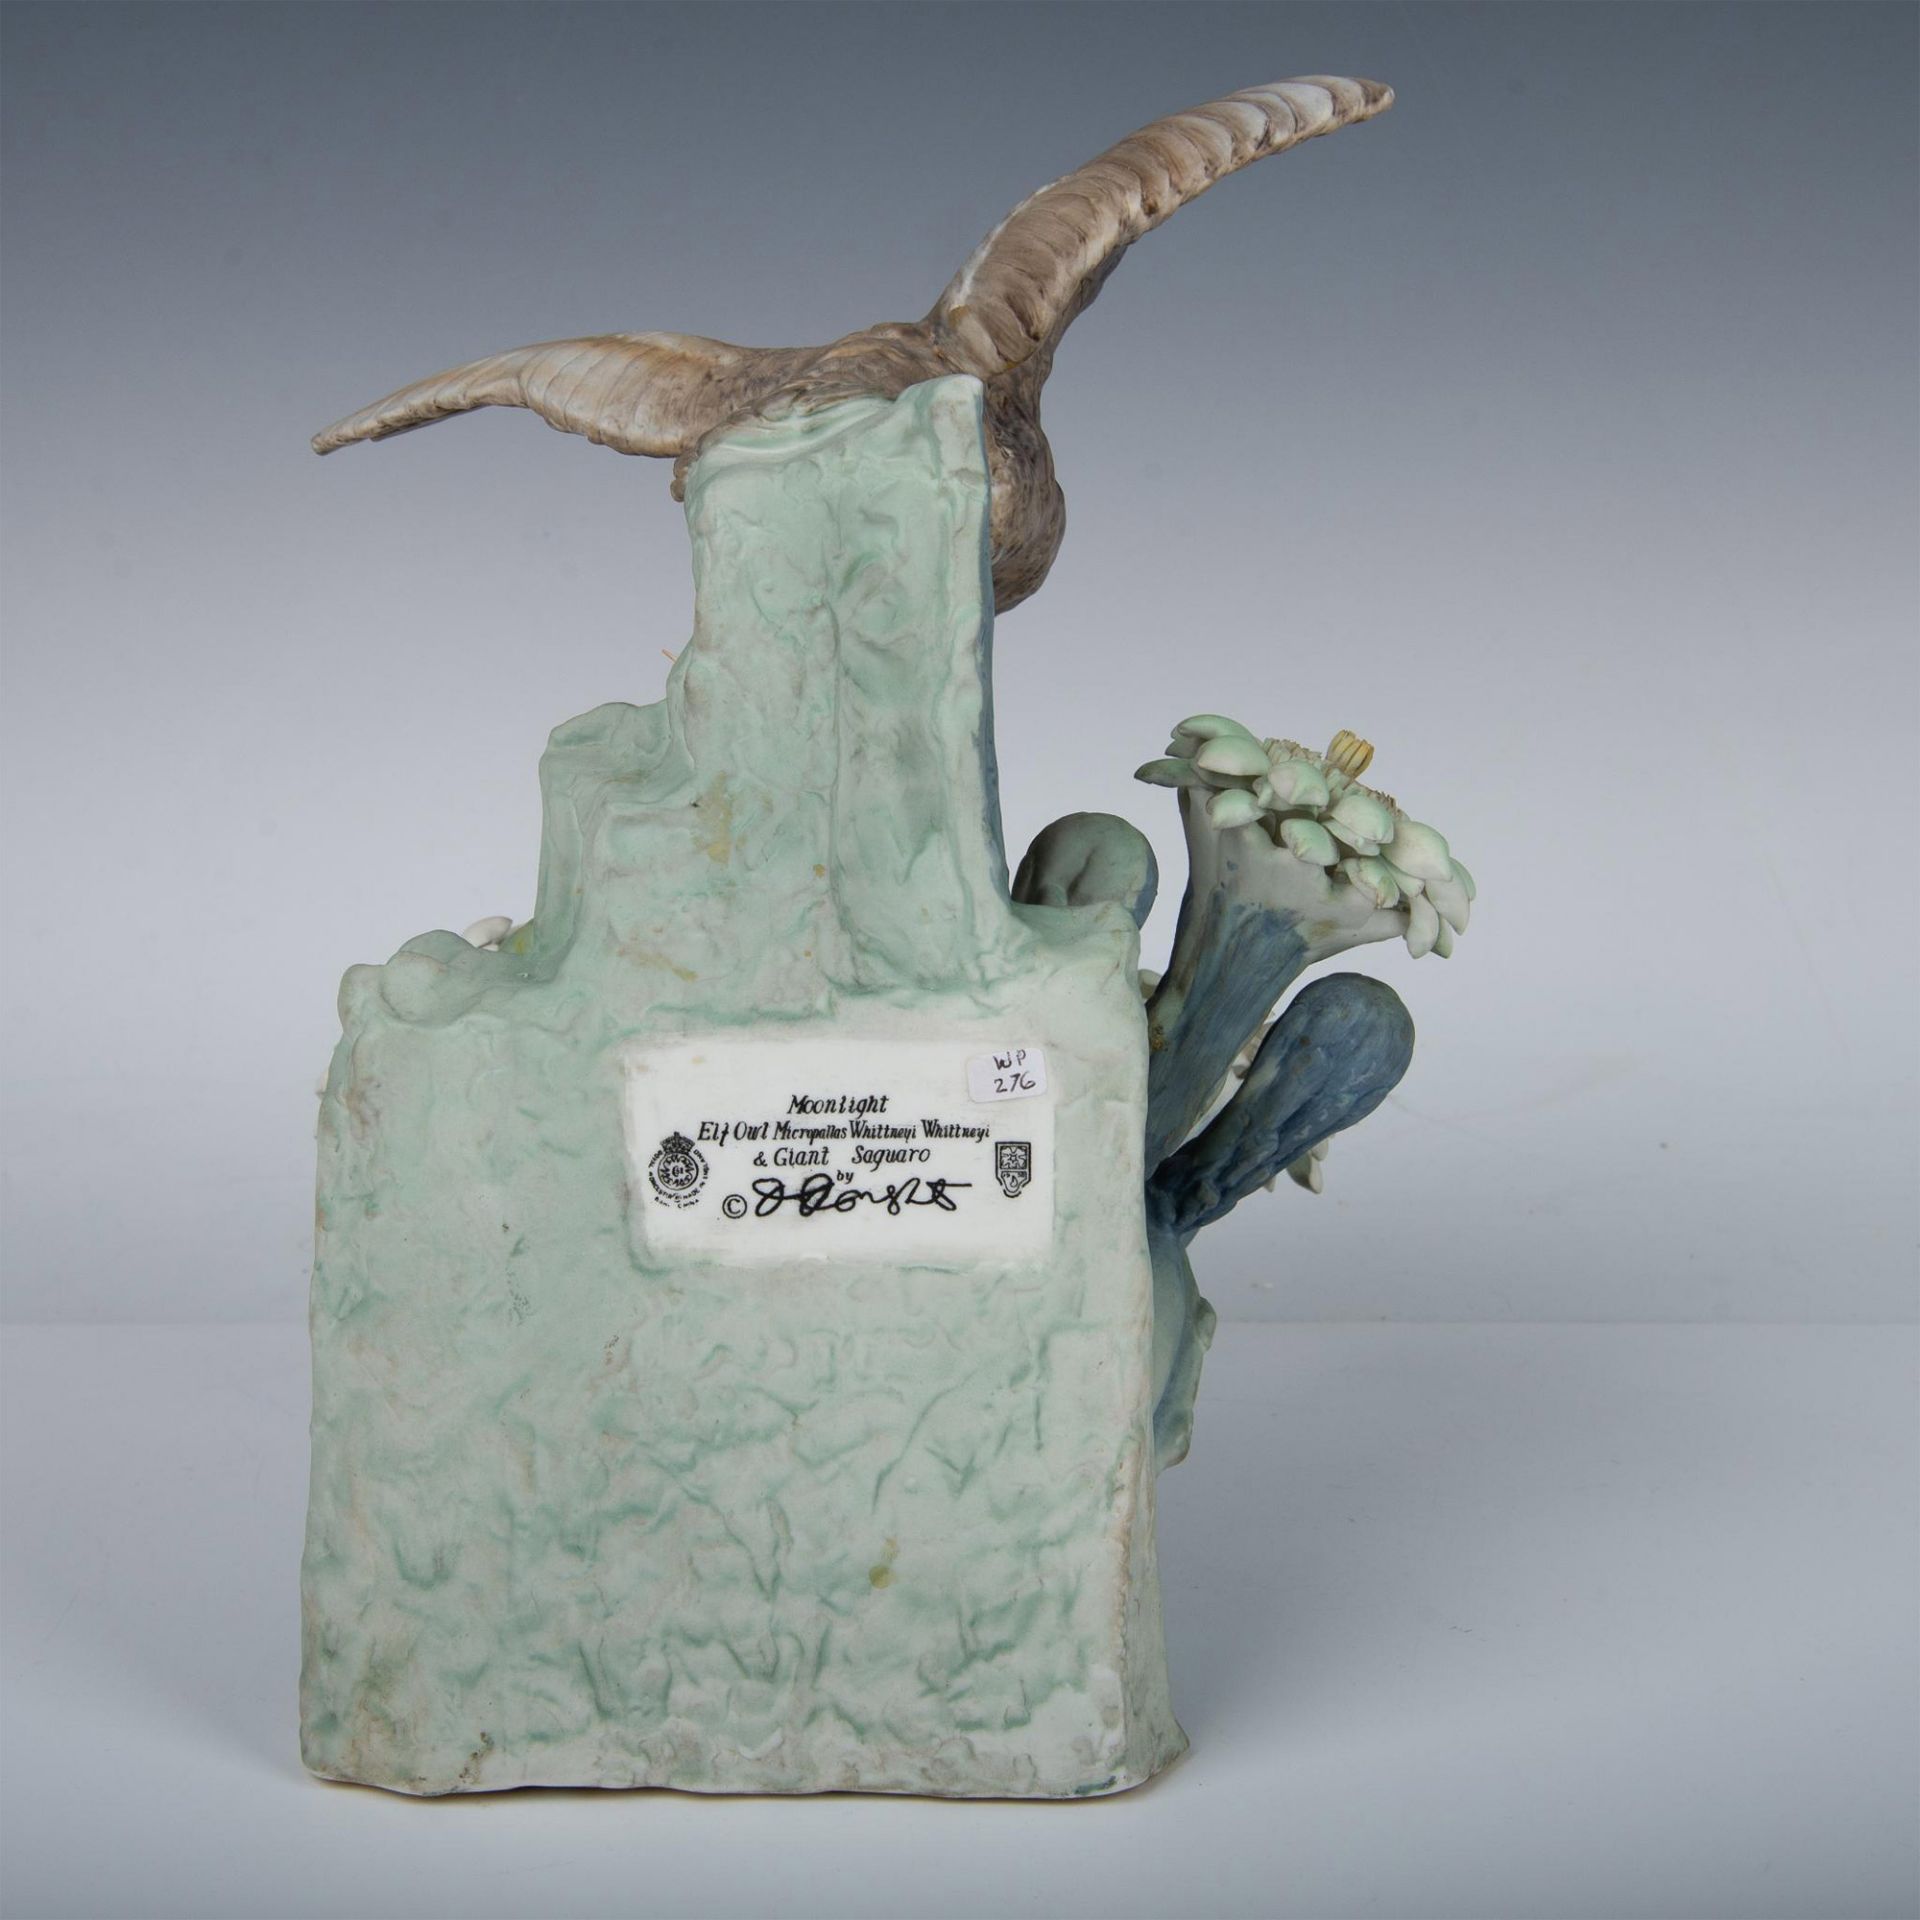 Royal Worcester Porcelain Figurine, Elf Owl and Saguaro - Image 3 of 9